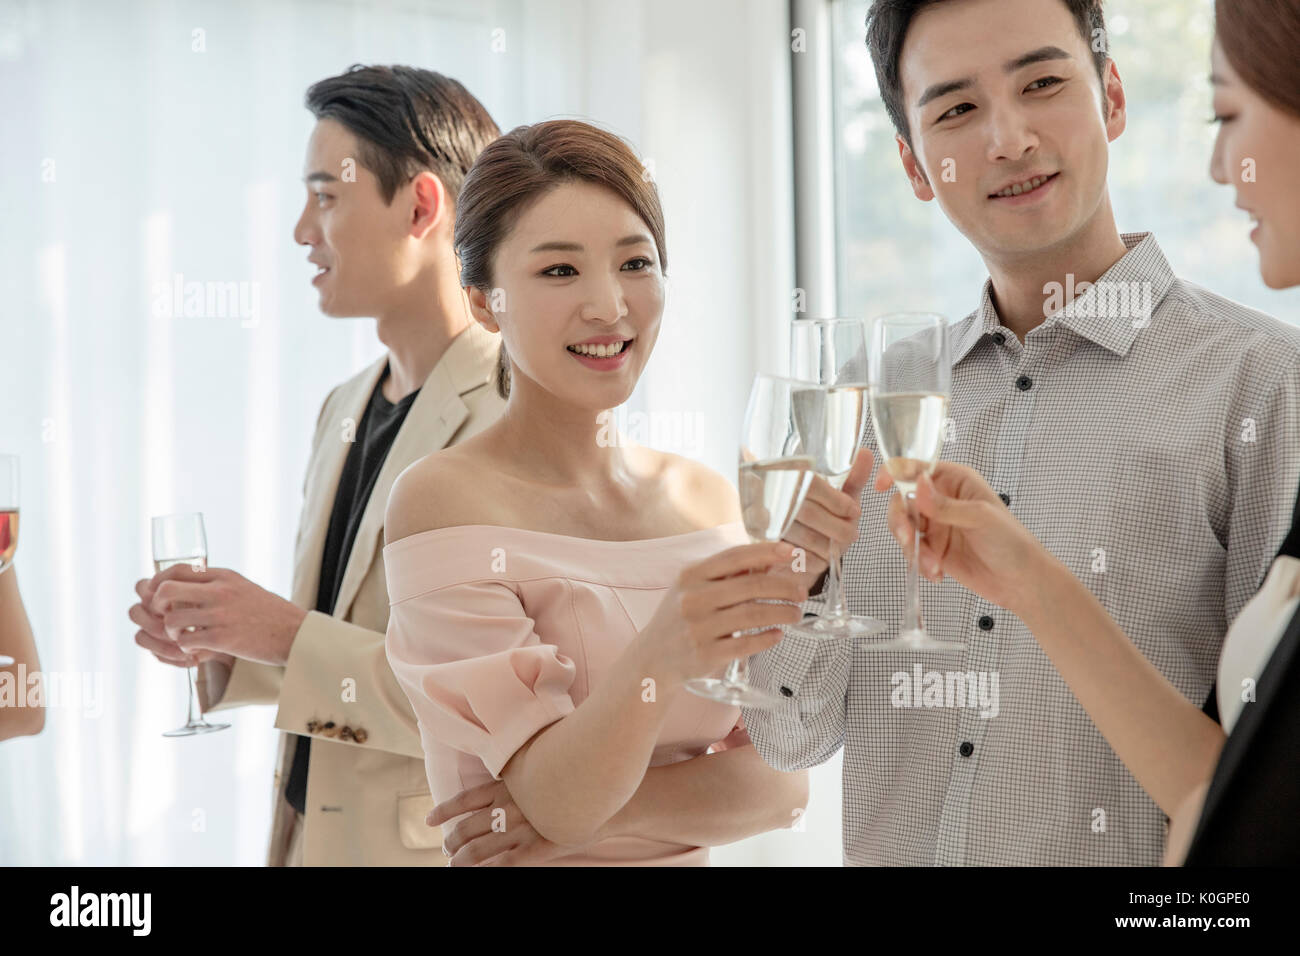 Retrato de joven gente sonriente con champagne copas disfrutando de una fiesta Foto de stock